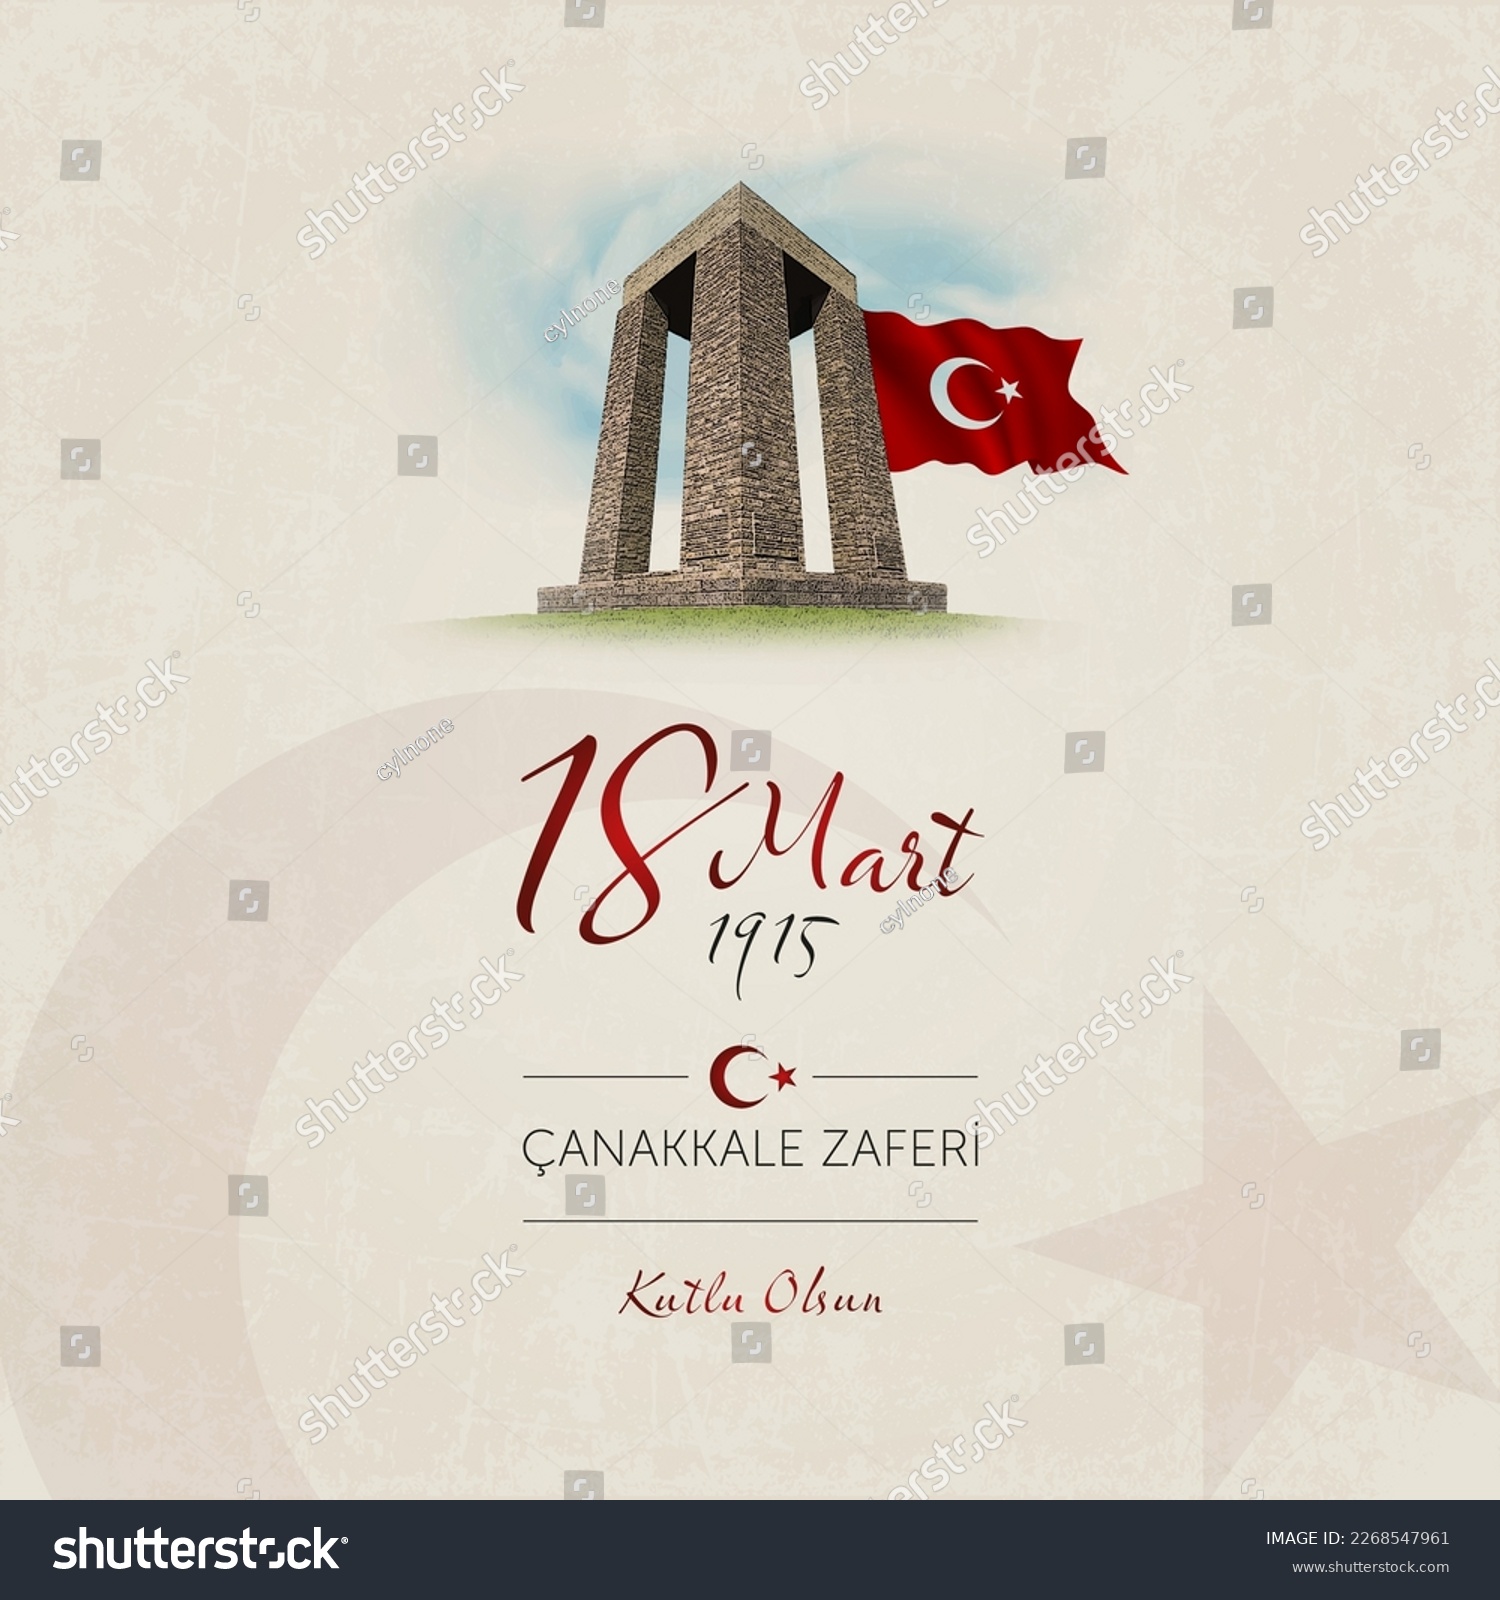 18 mart canakkale zaferi vector illustration. (18 March, Canakkale Victory Day Turkey celebration card.) #2268547961